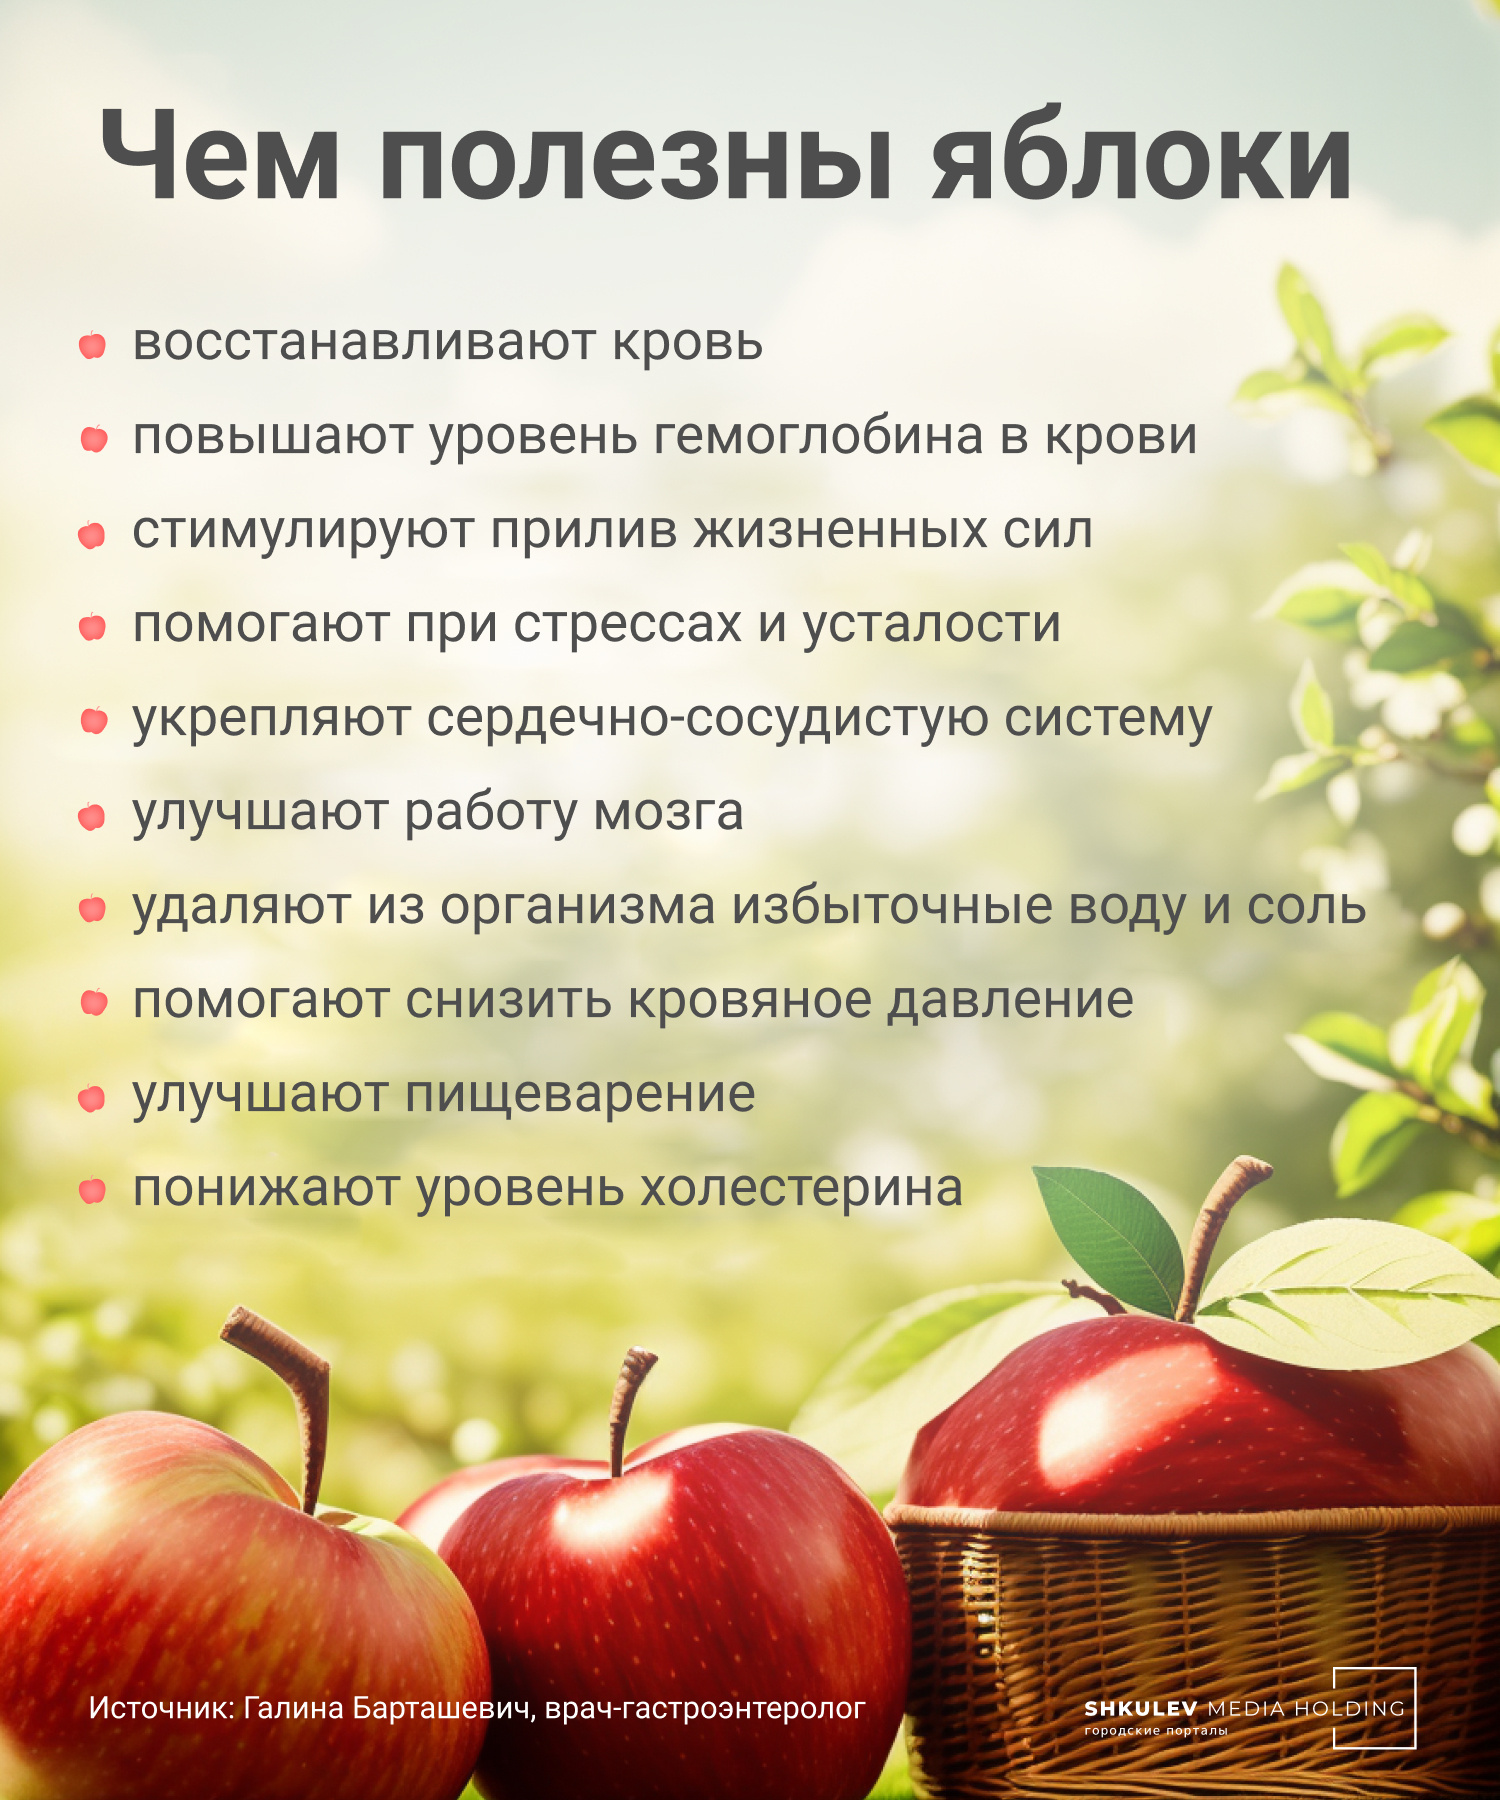 Полезные свойства яблок